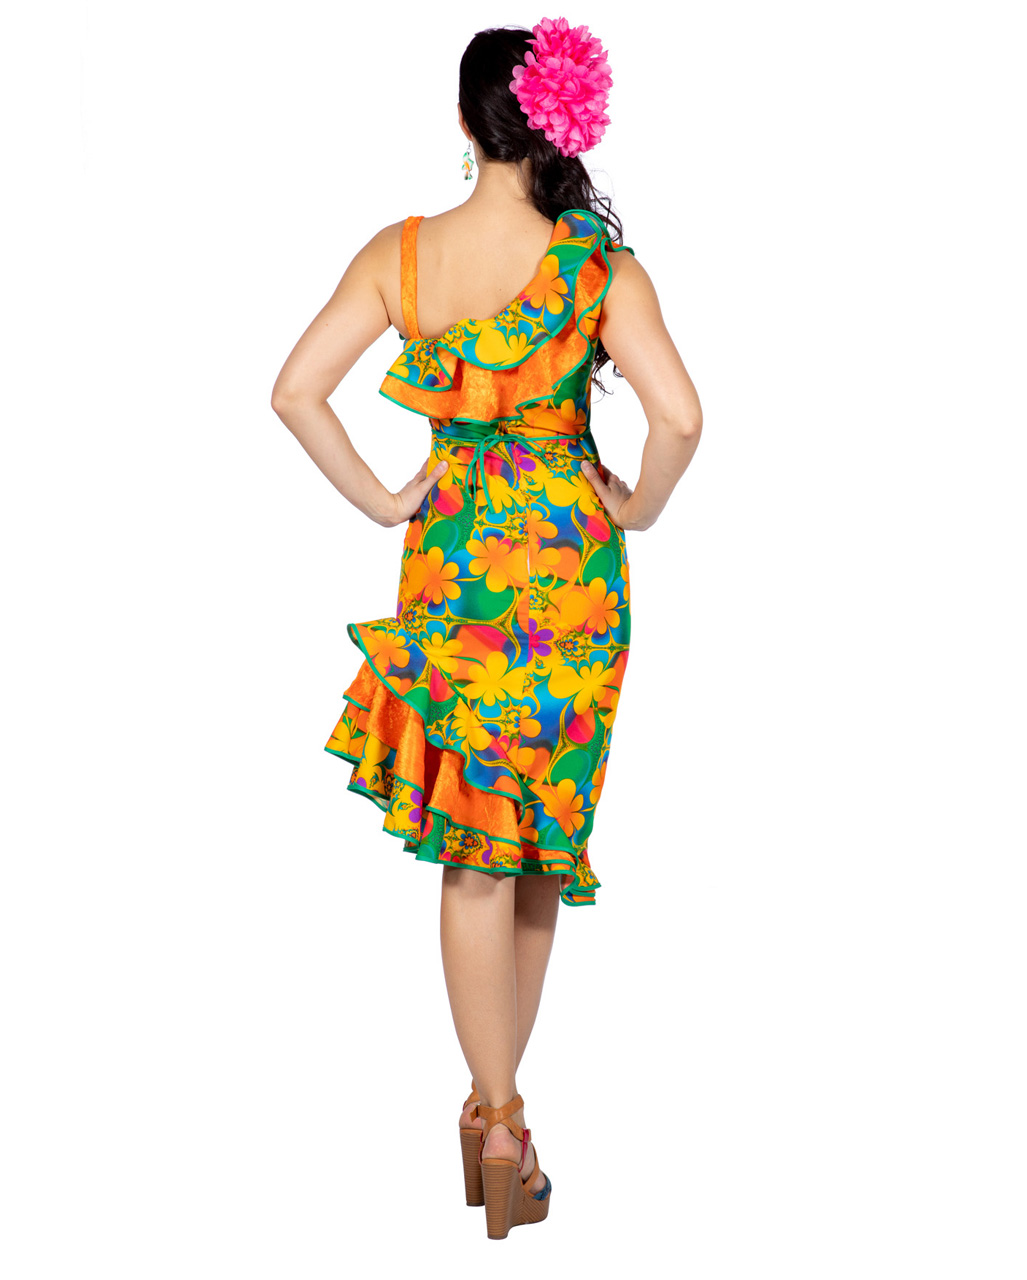 Hawaii Flower Dress for carnival & fancy dress party ...